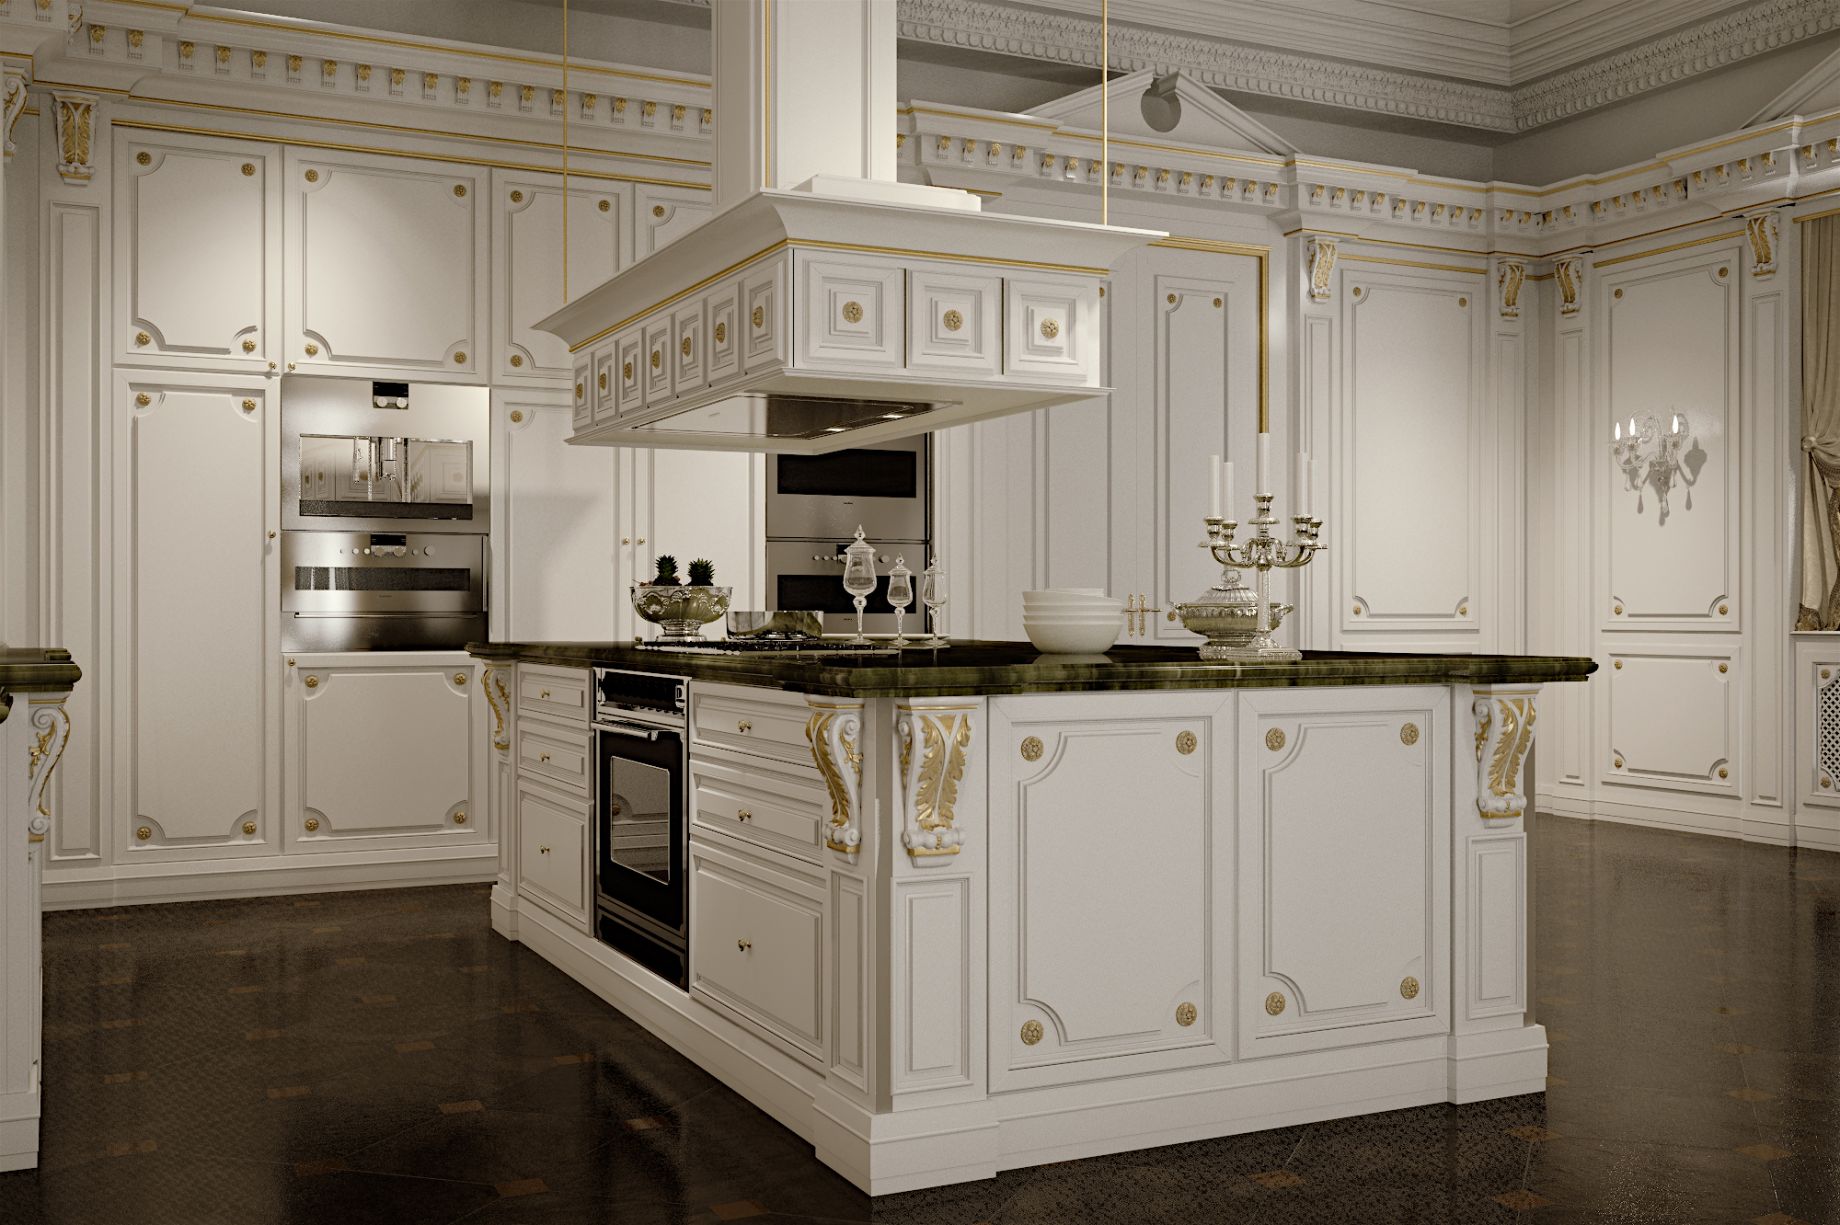 luxurious kitchen